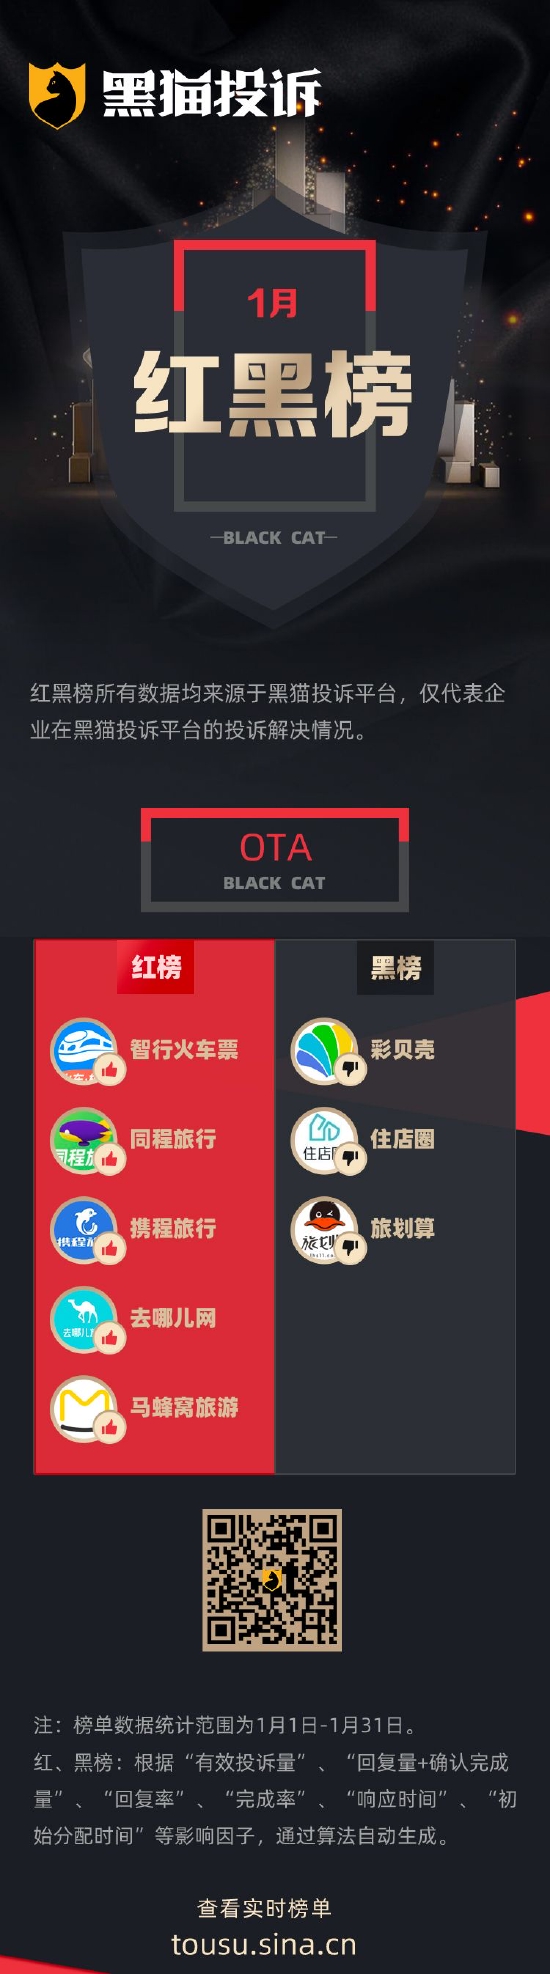 1月黑猫投诉OTA领域红黑榜：住店圈不退押金、平台无回应